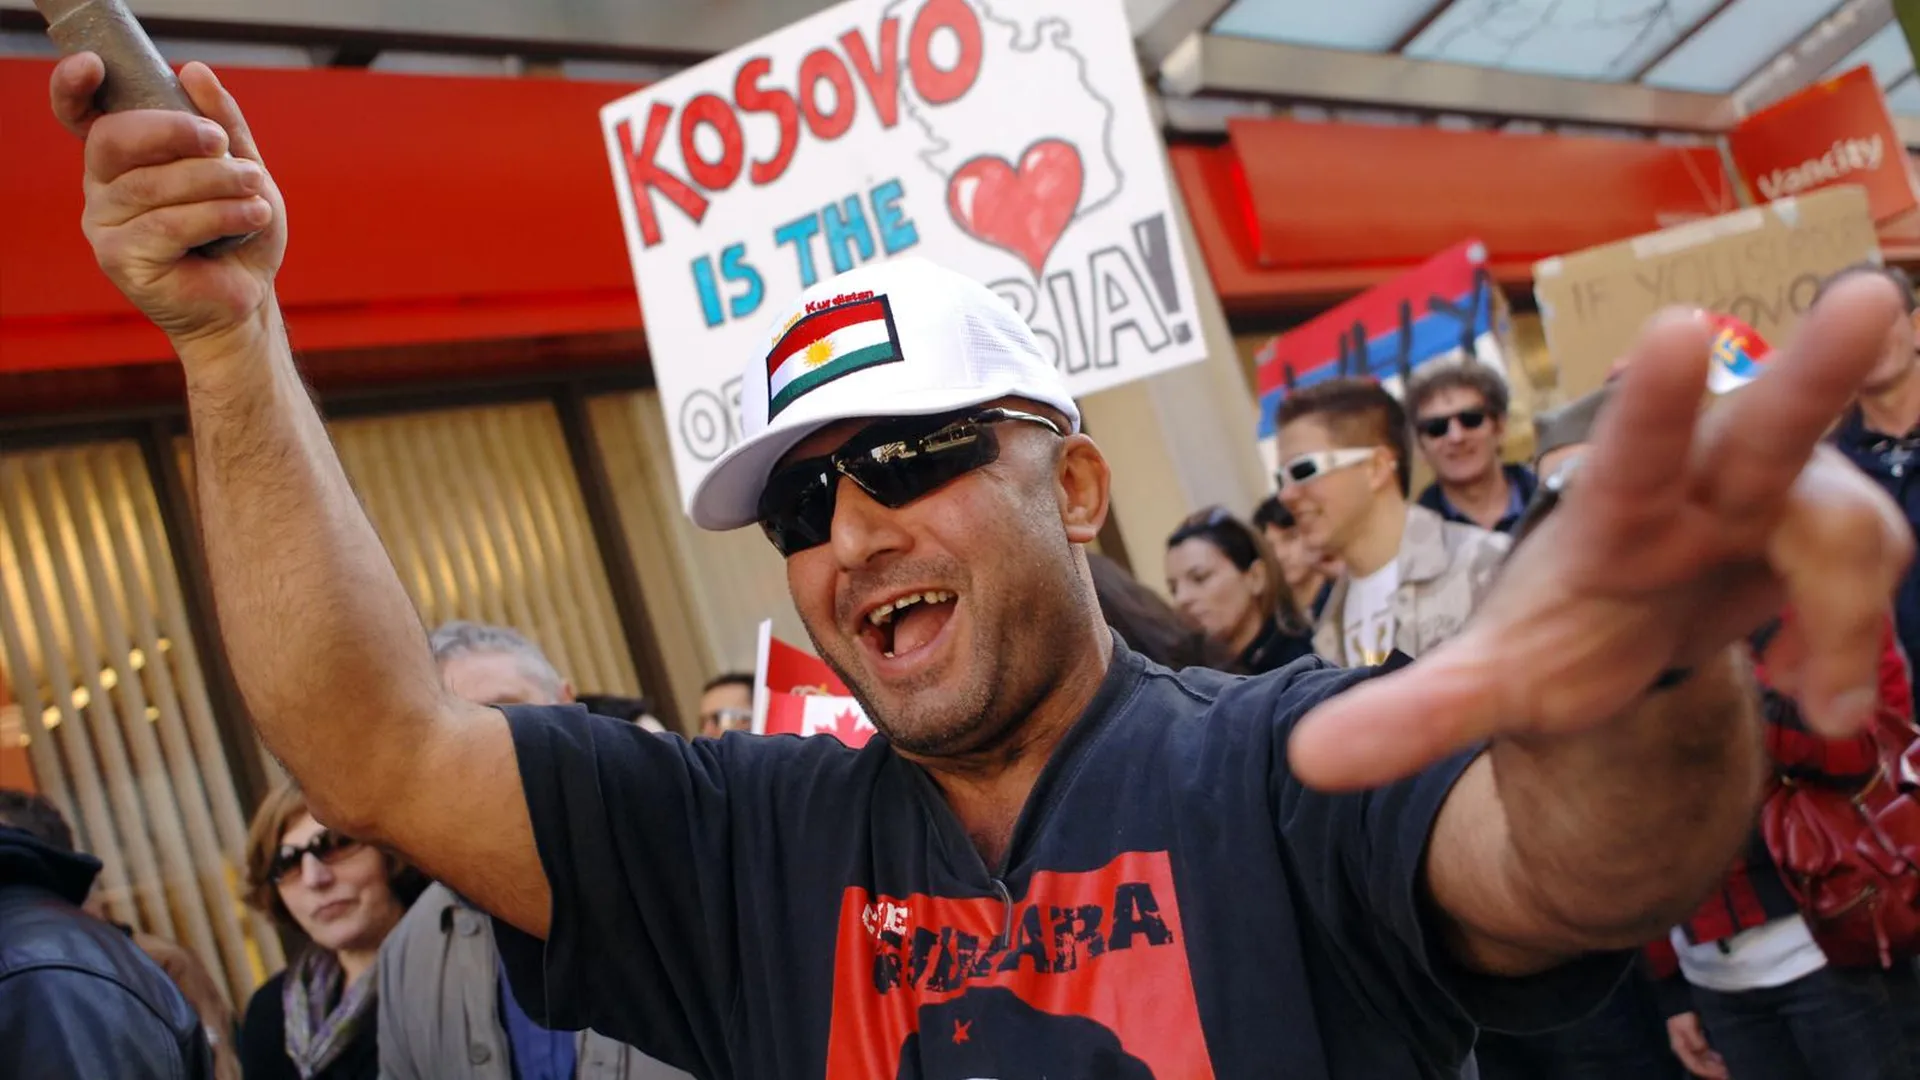 Канадцы сербского происхождения на митинге в Ванкувере скандируют «Косово — это Сербия». Фото: bc4